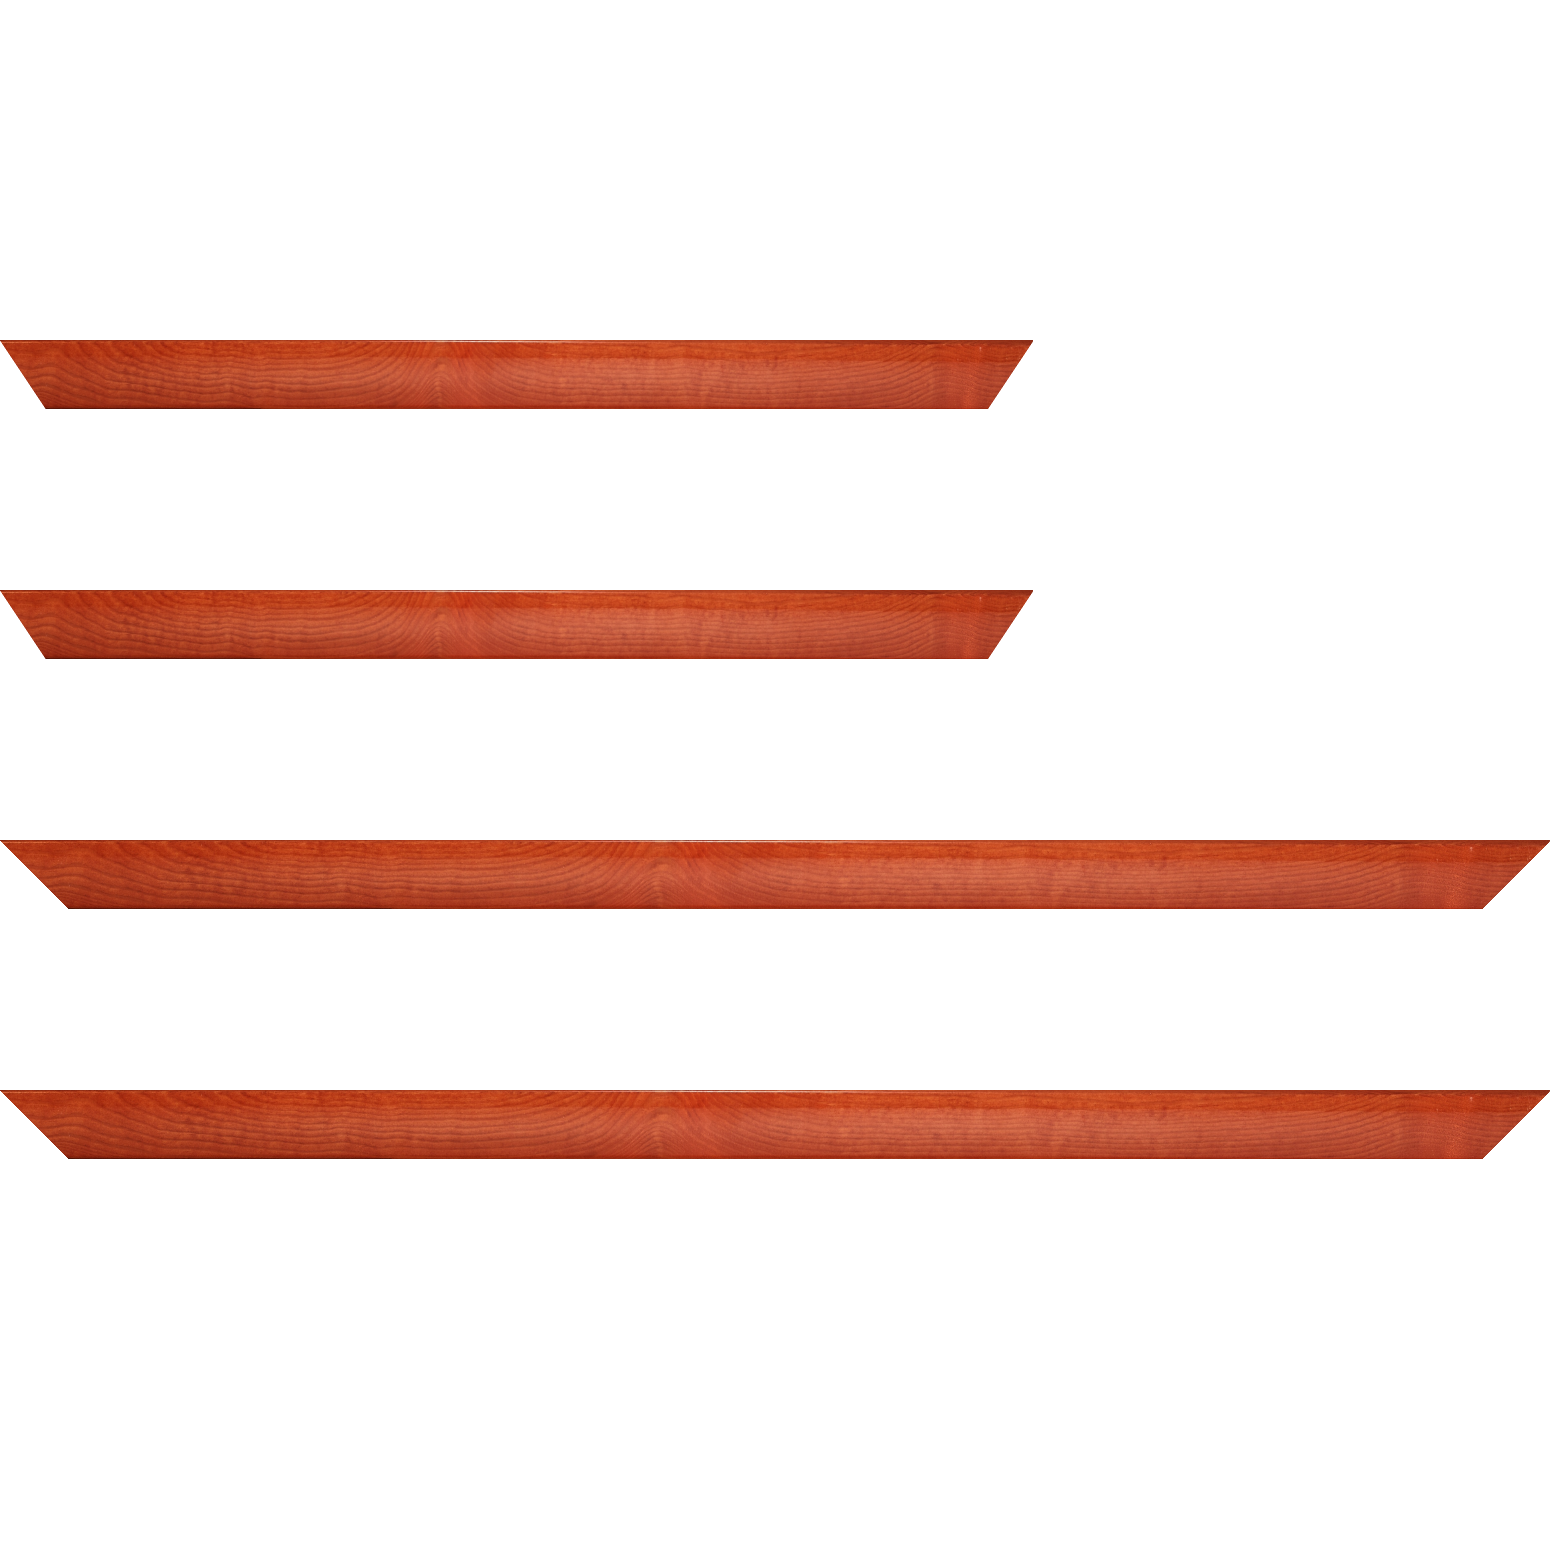 Baguette bois profil arrondi en pente plongeant largeur 2.4cm couleur orange finition vernis brillant,veine du bois  apparent (pin) ,